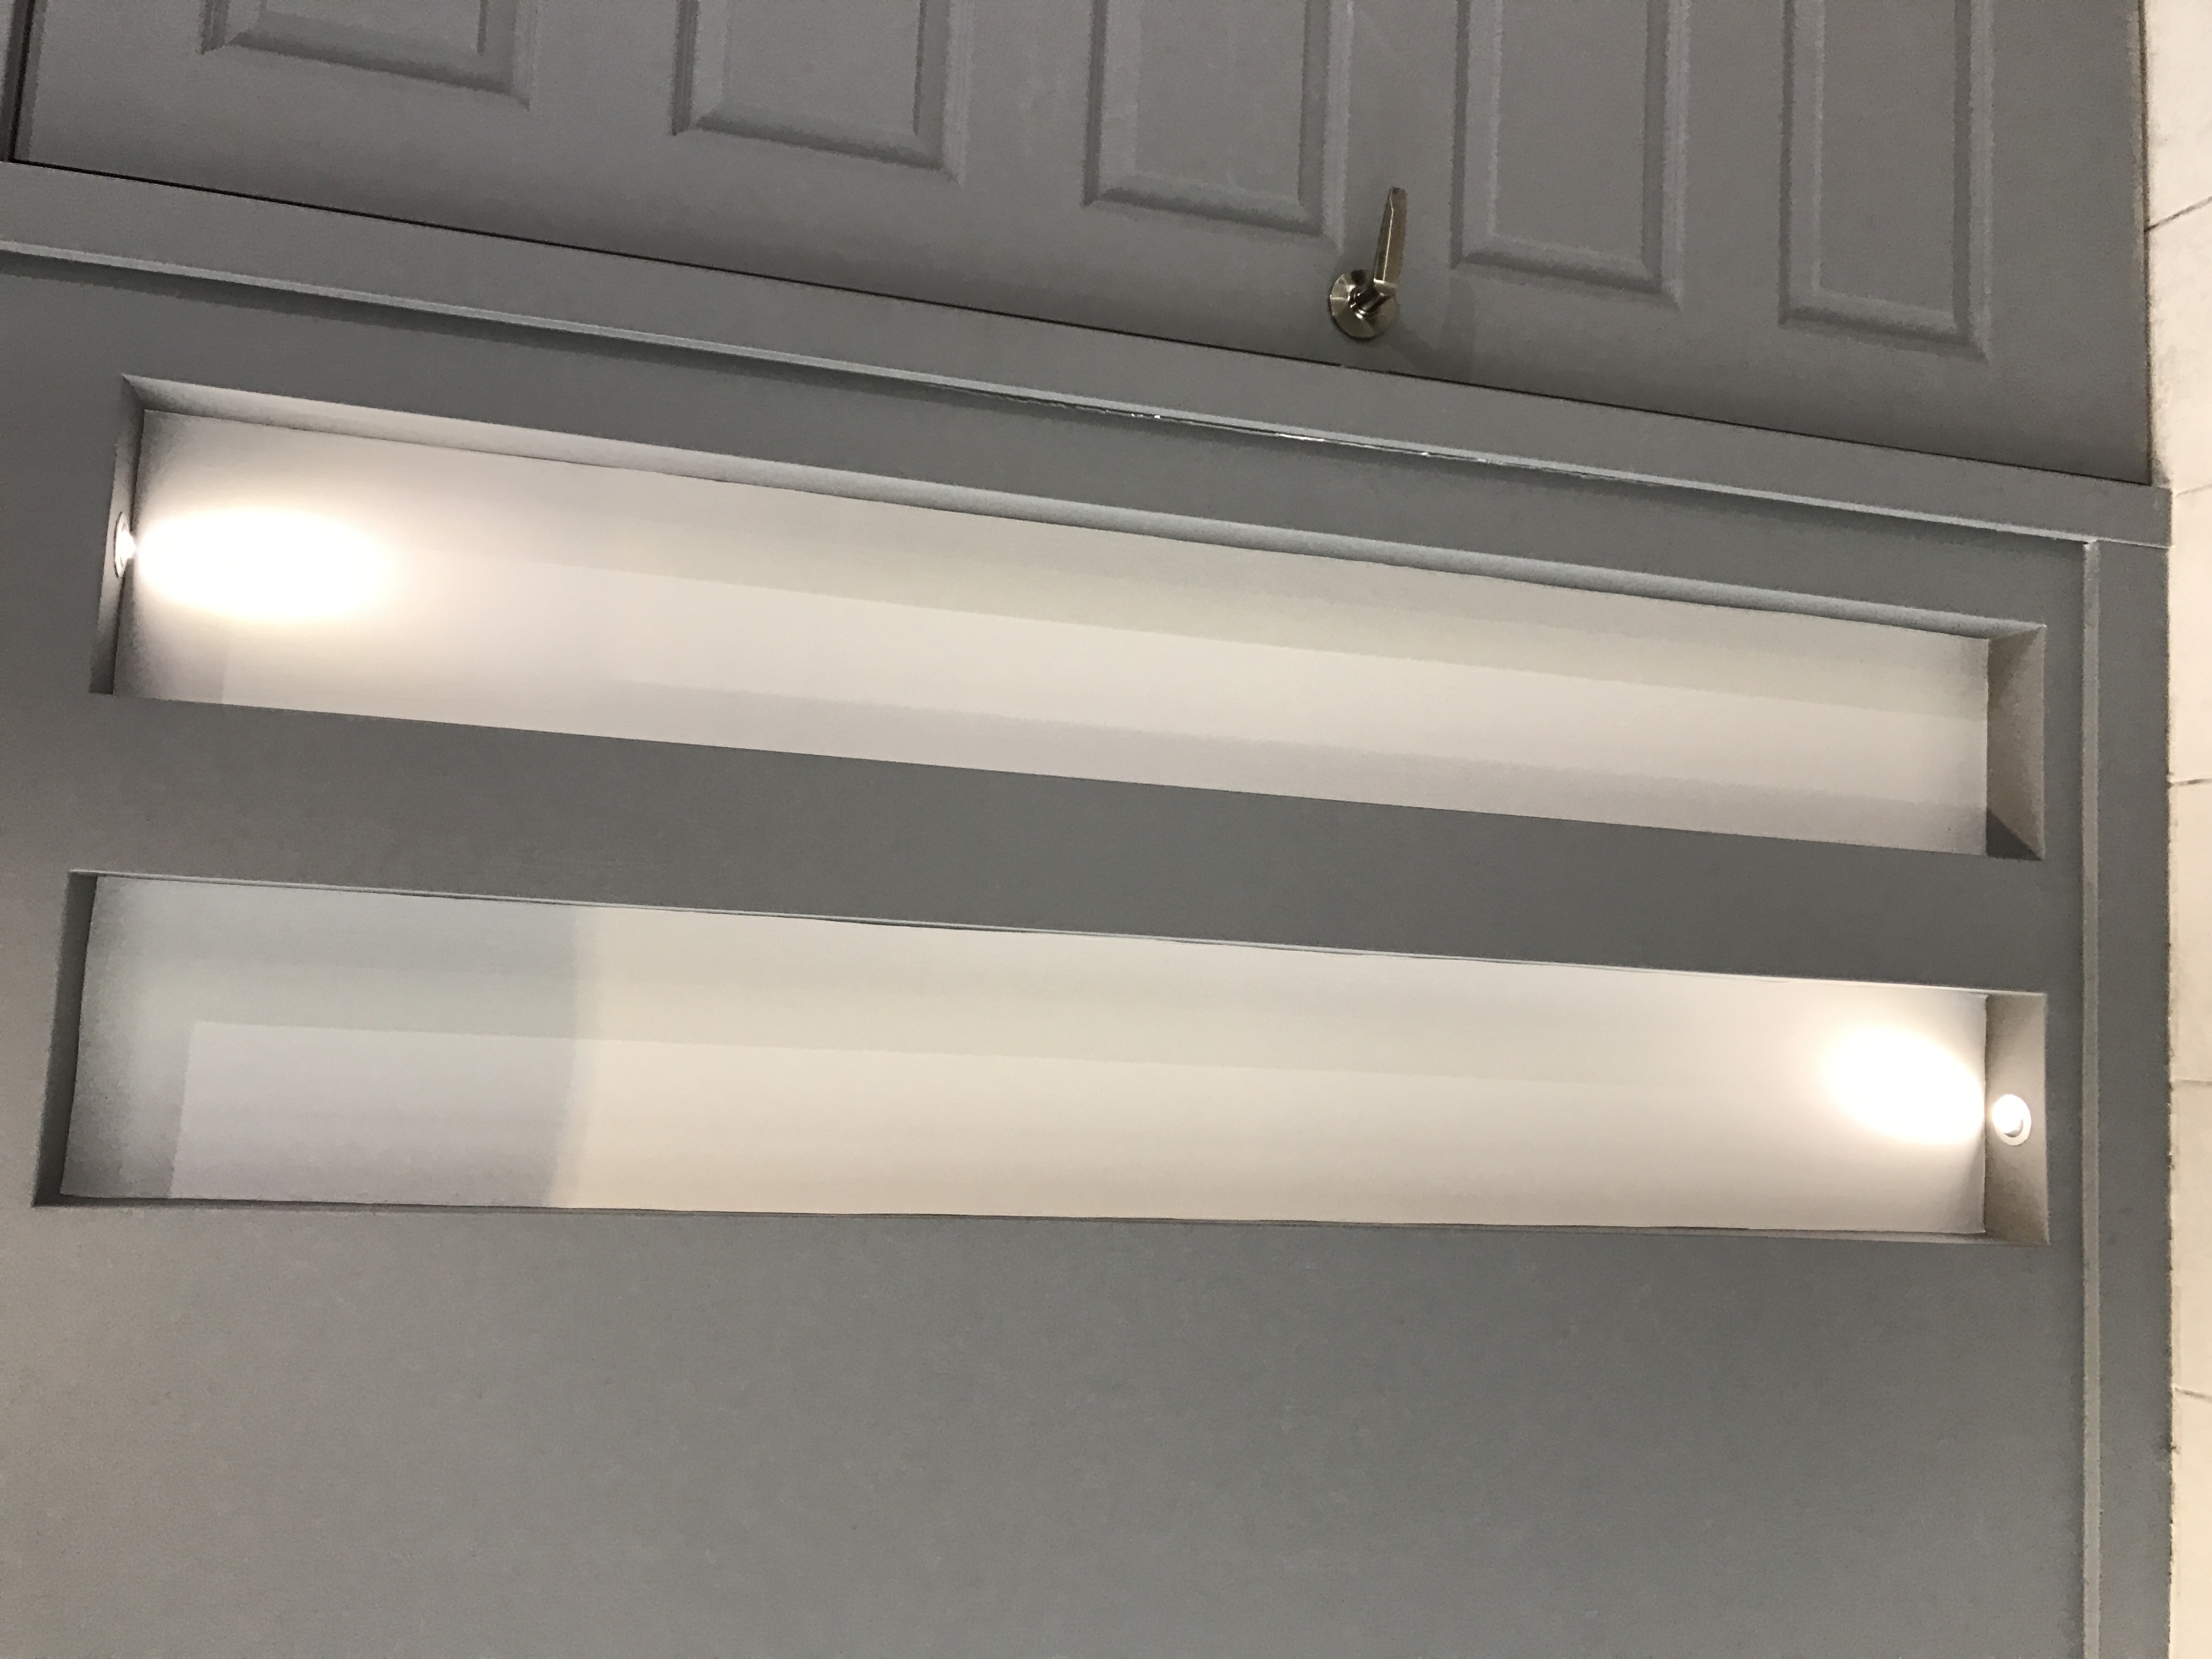 LED wall niche lights